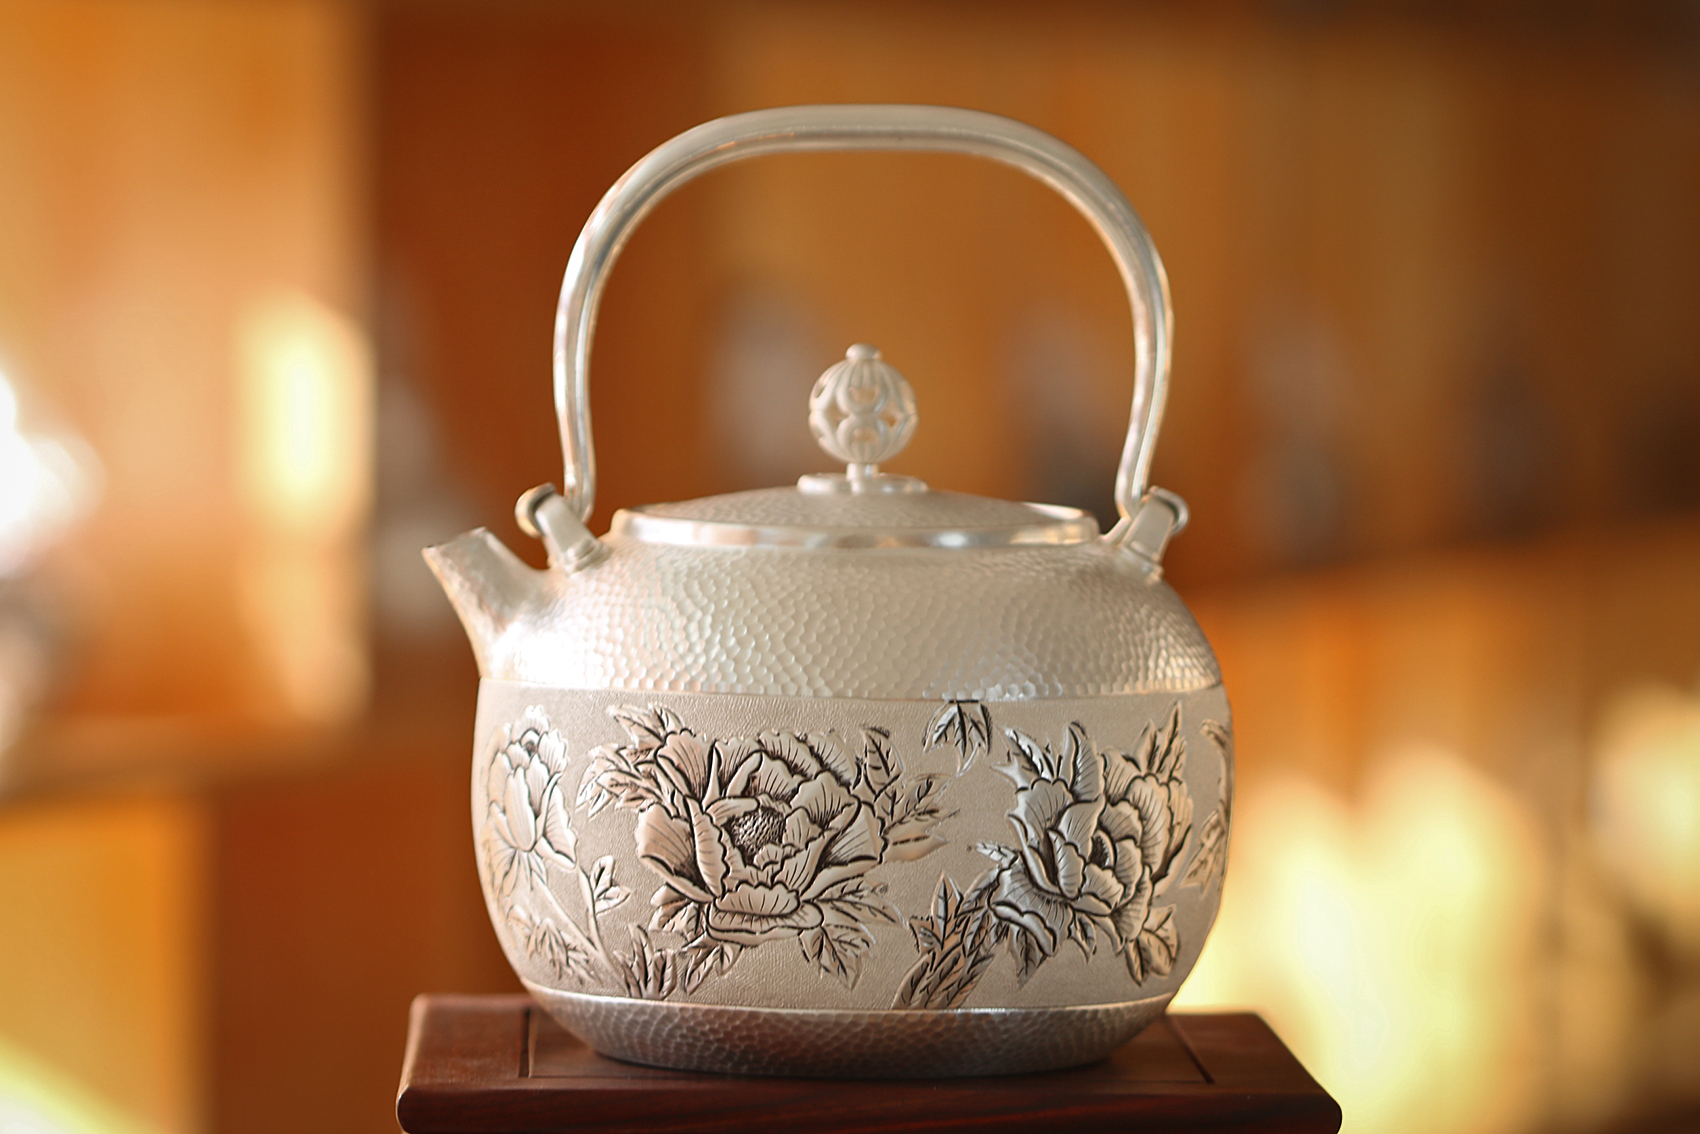 尚壶坊茶器官网_提供经典银壶、紫砂壶茶具，传承非物质文化遗产